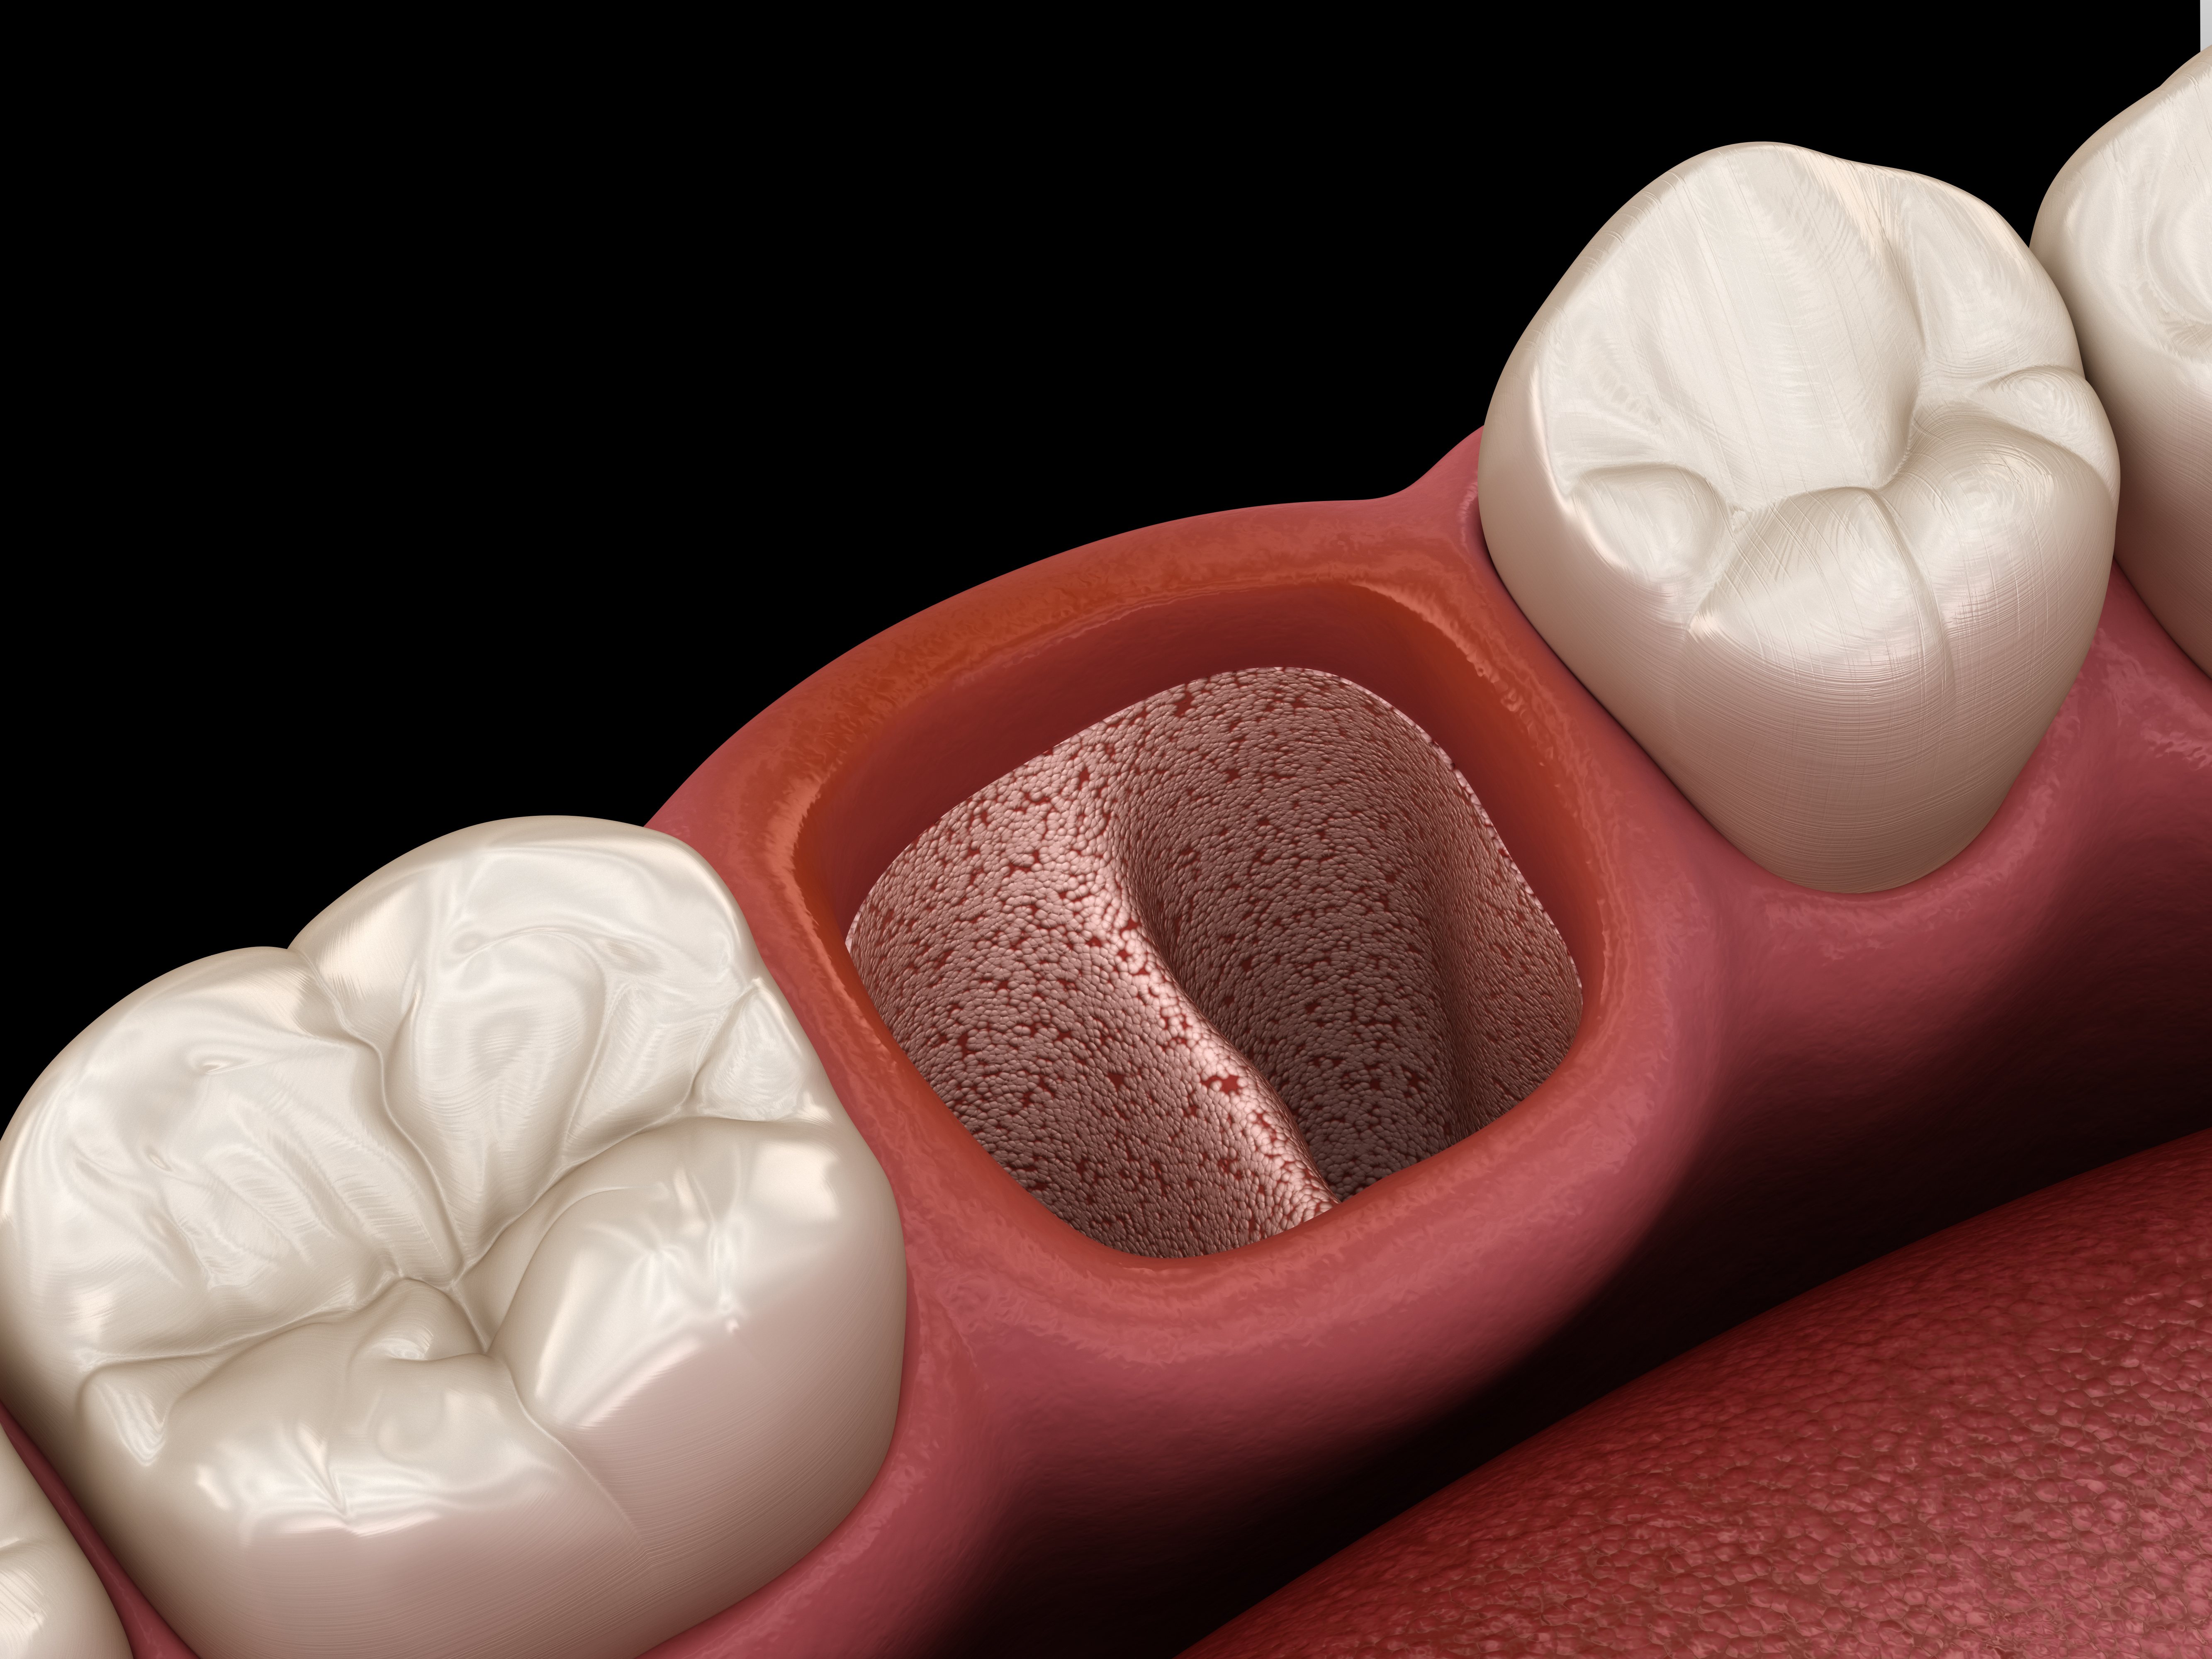 Tooth extraction. Альвеолит в стоматологии. Гипертрофический альвеолит. Альвеолит зубной лунки.